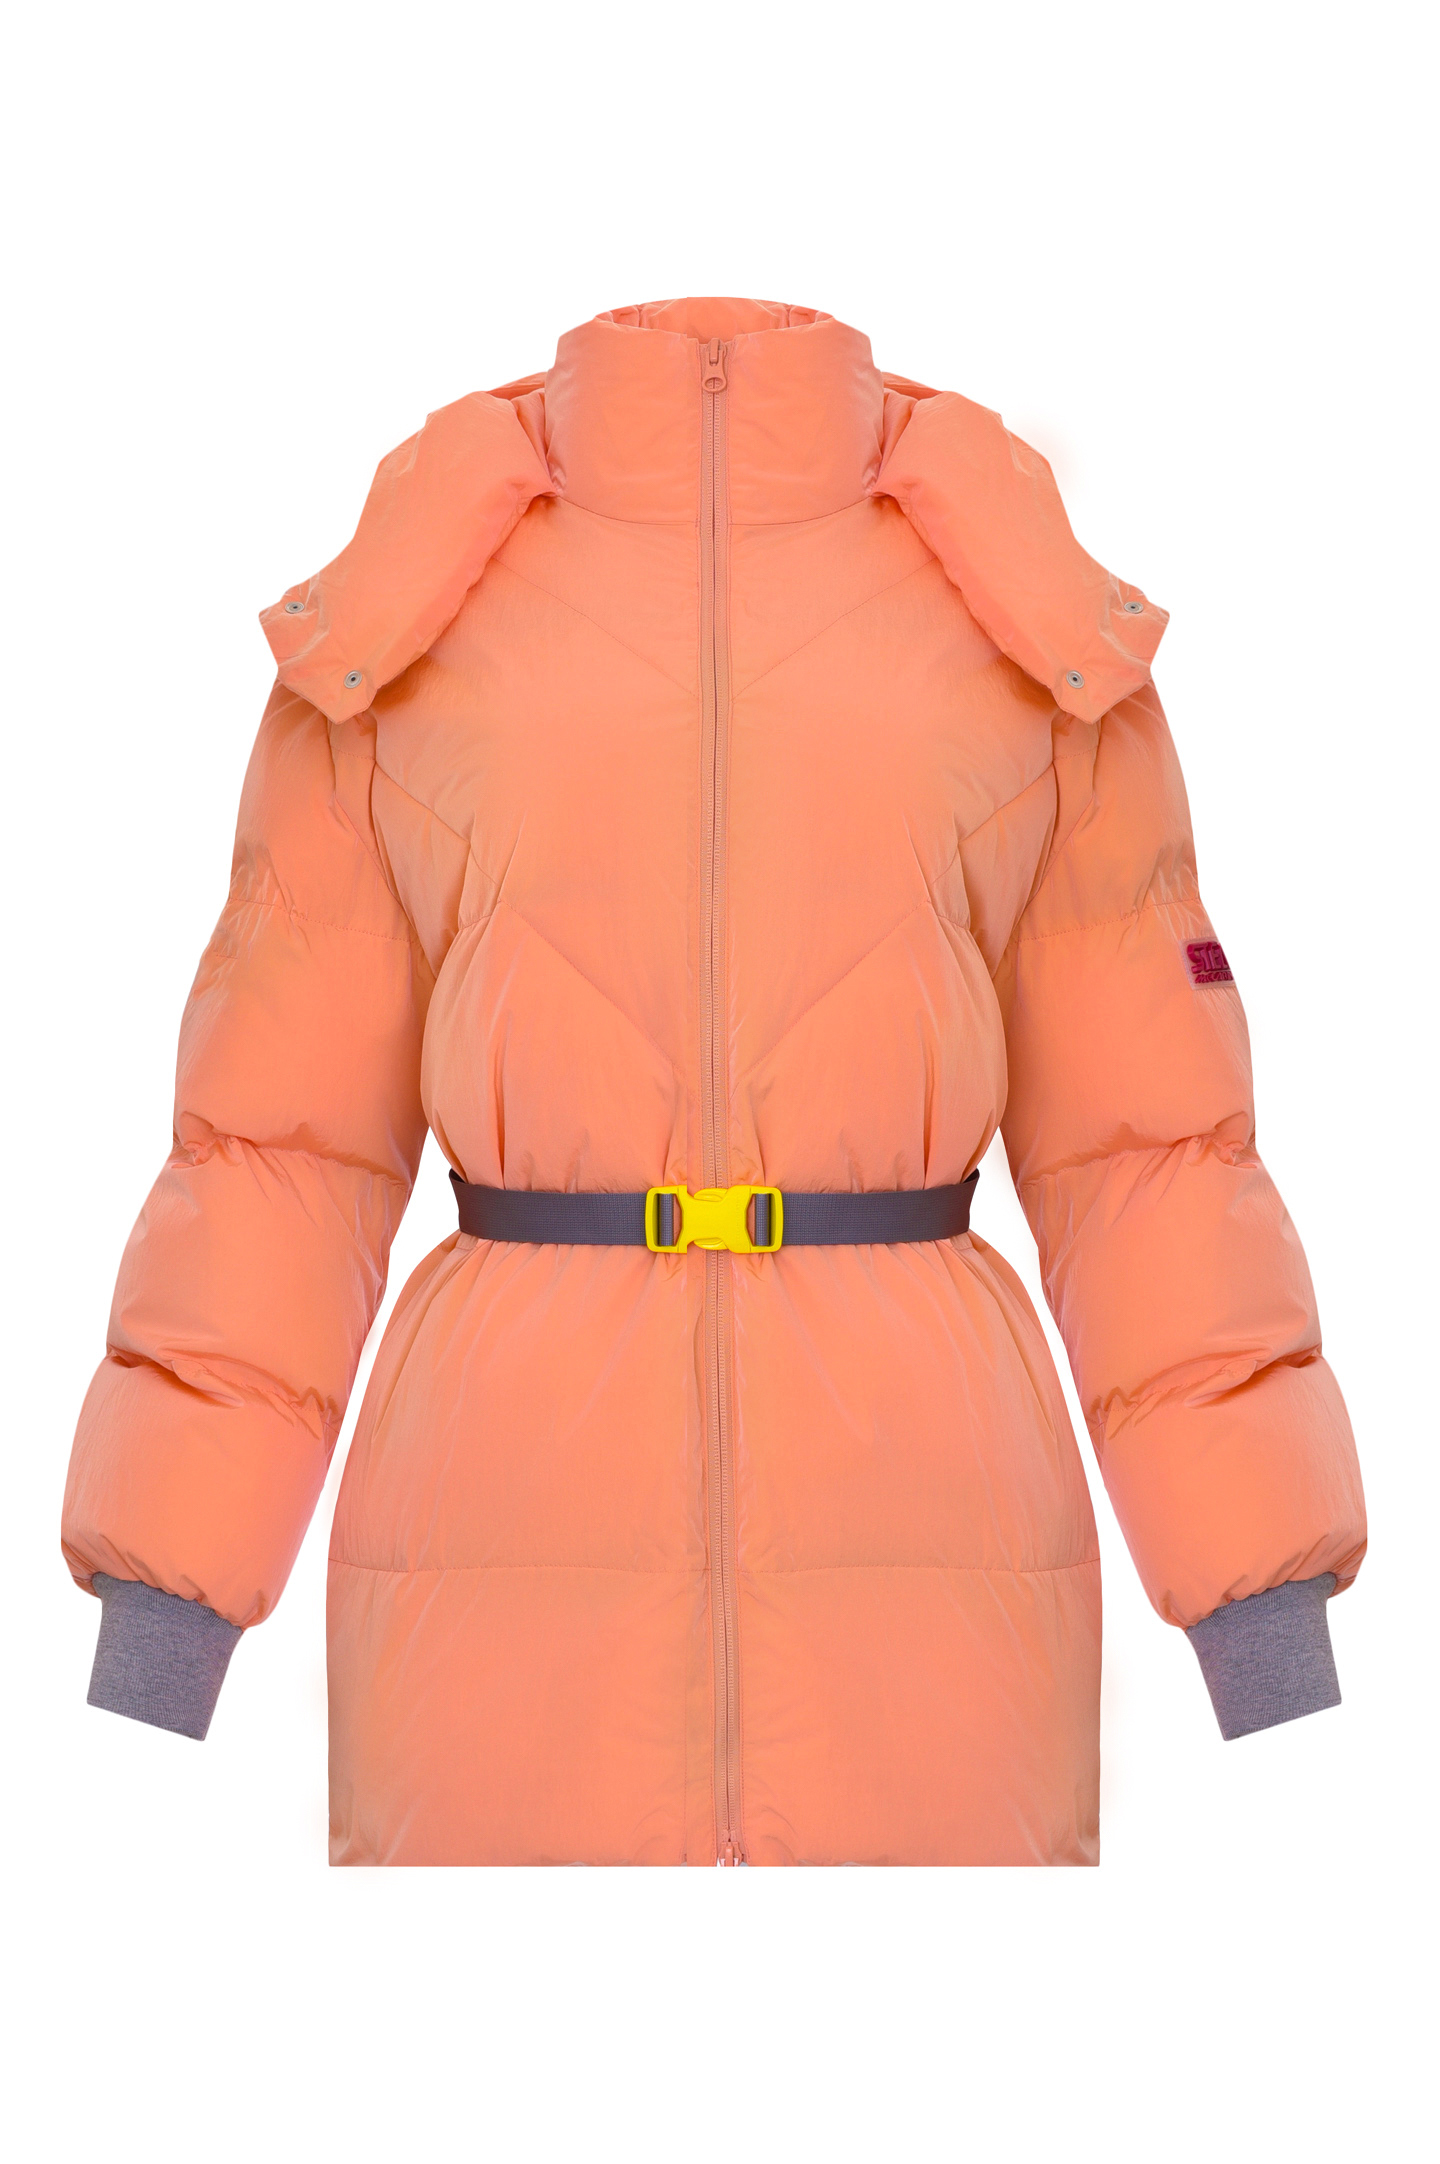 Куртка STELLA McCARTNEY 603219SSA14, цвет: Персиковый, Женский